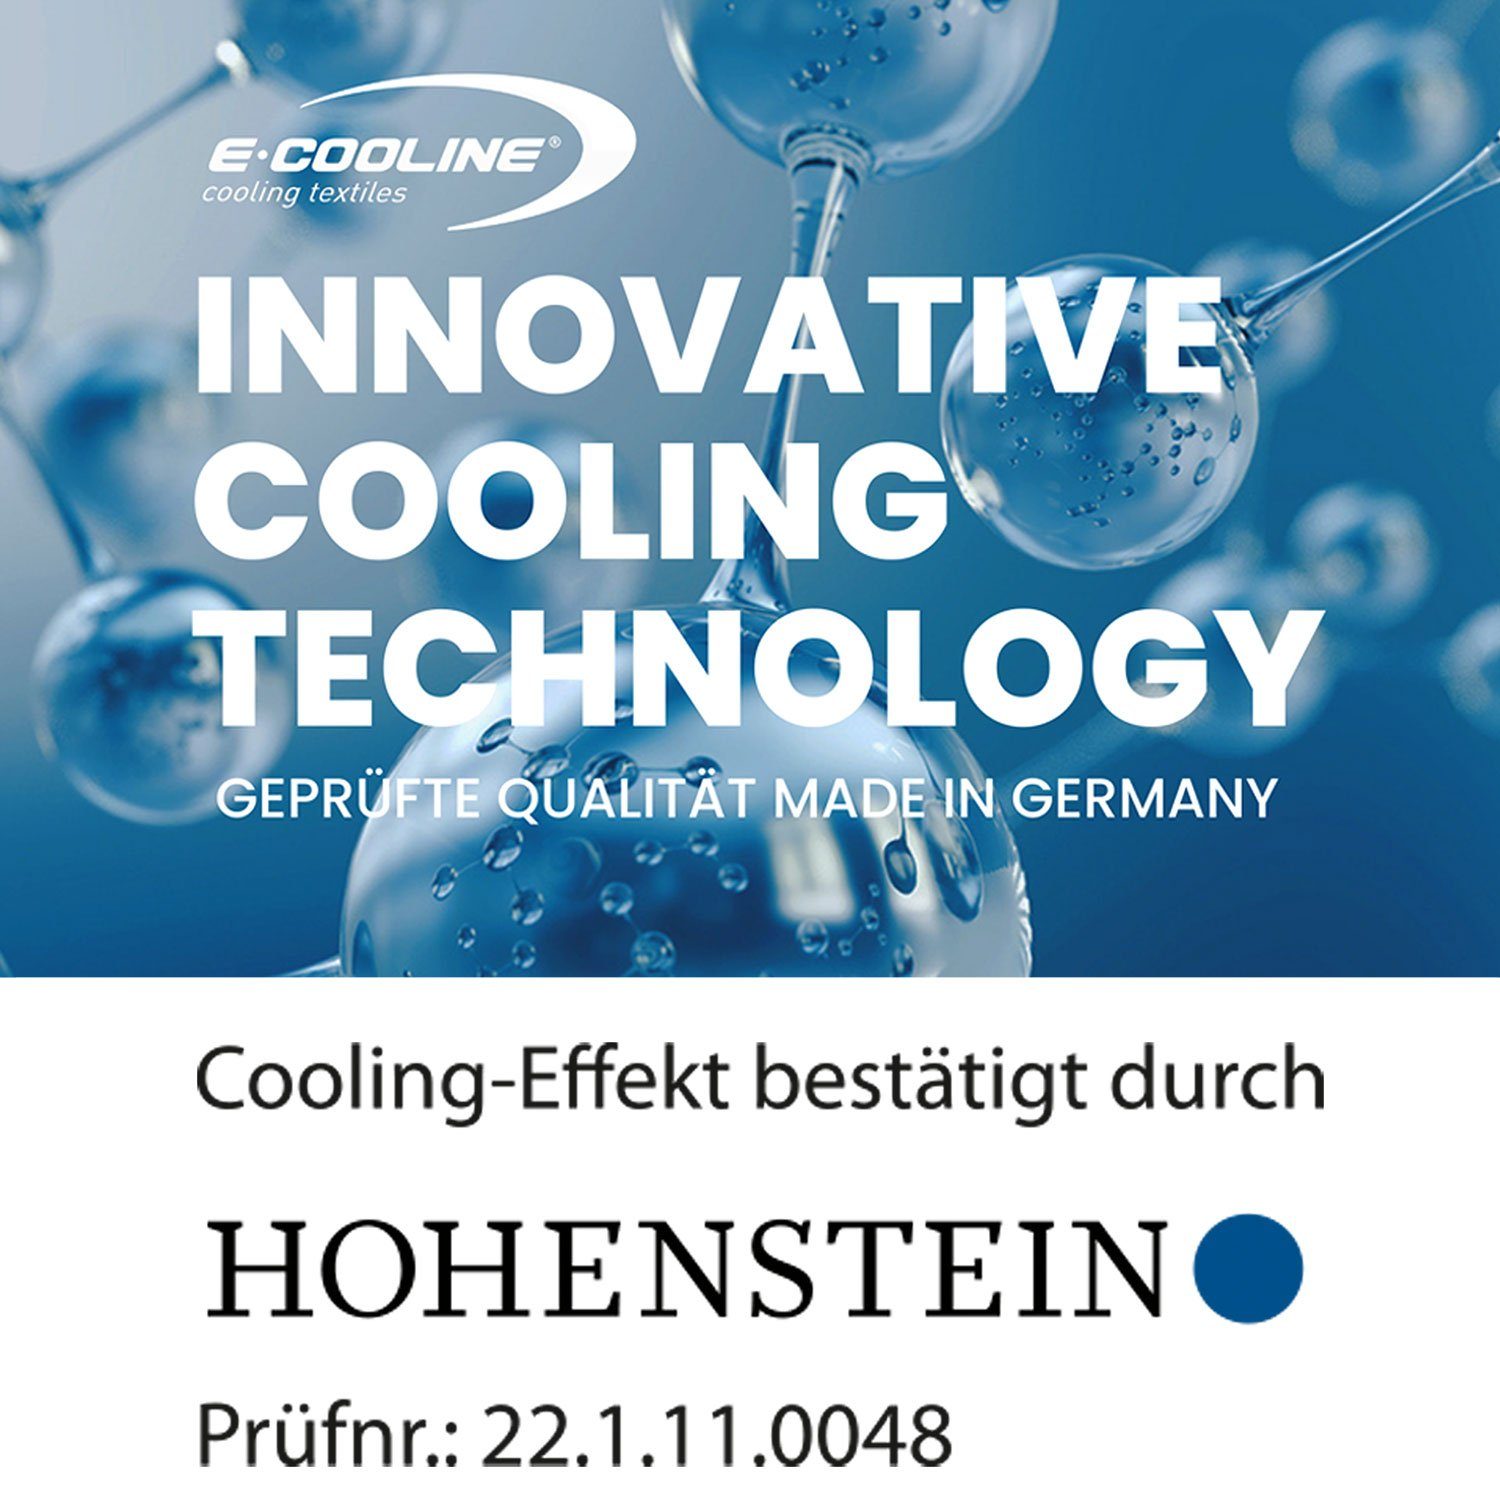 kühlend Kühlung, mit aktive - durch E.COOLINE Klimaanlage stundenlange Kühlung Schwarz Bandana Anziehen zum - Wasser, Aktivierung